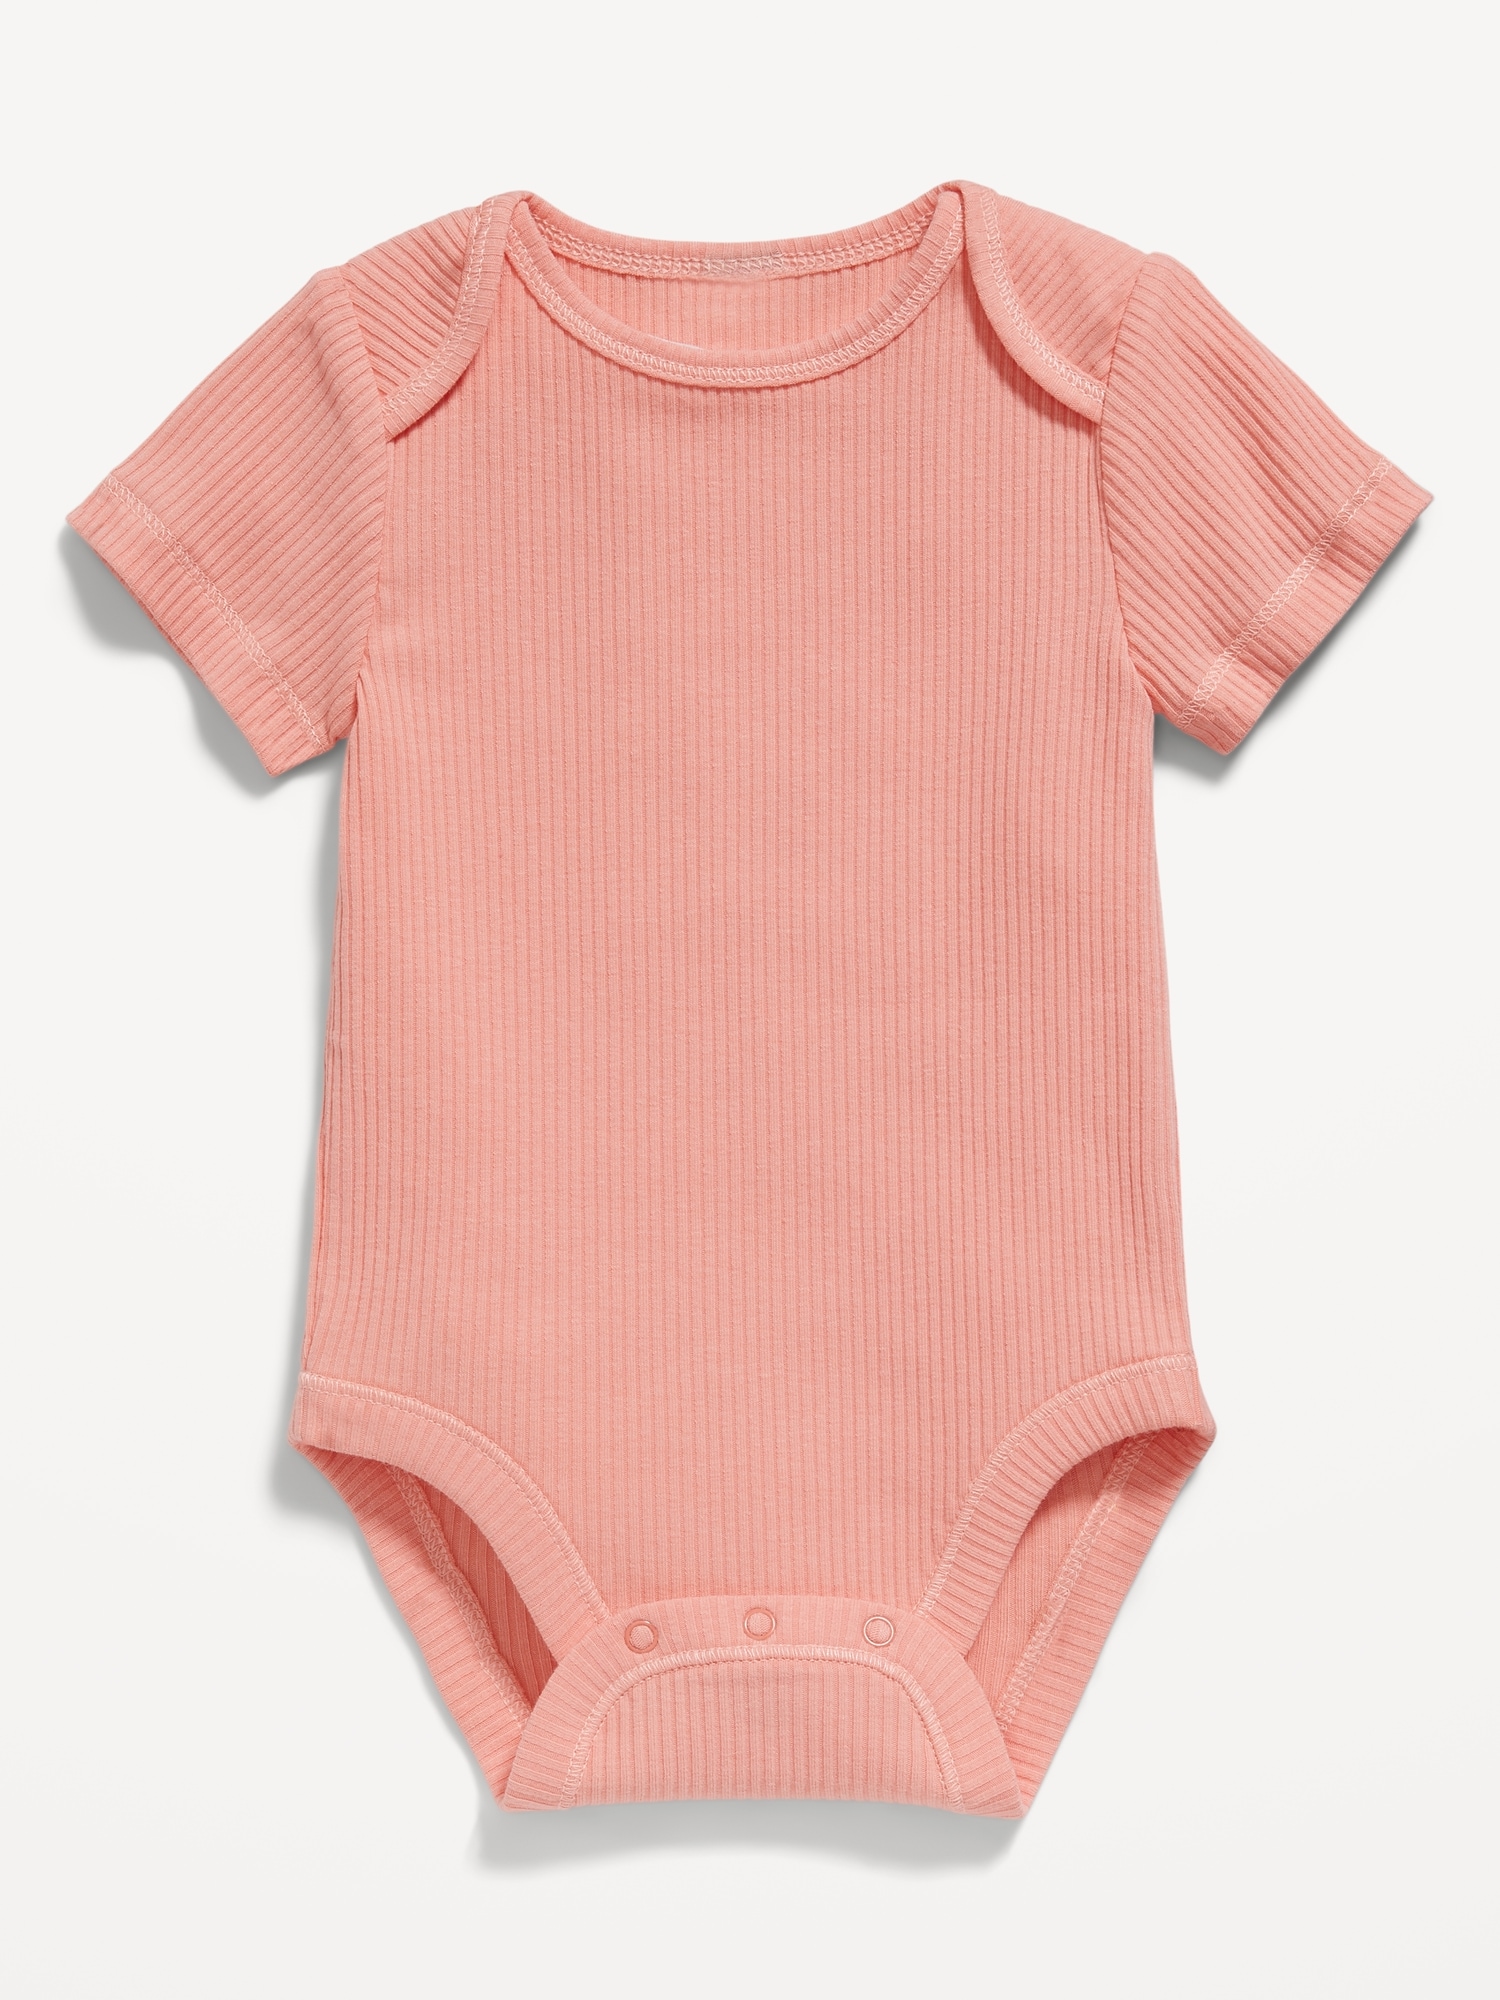 Short-Sleeve Rib-Knit Bodysuit for Baby